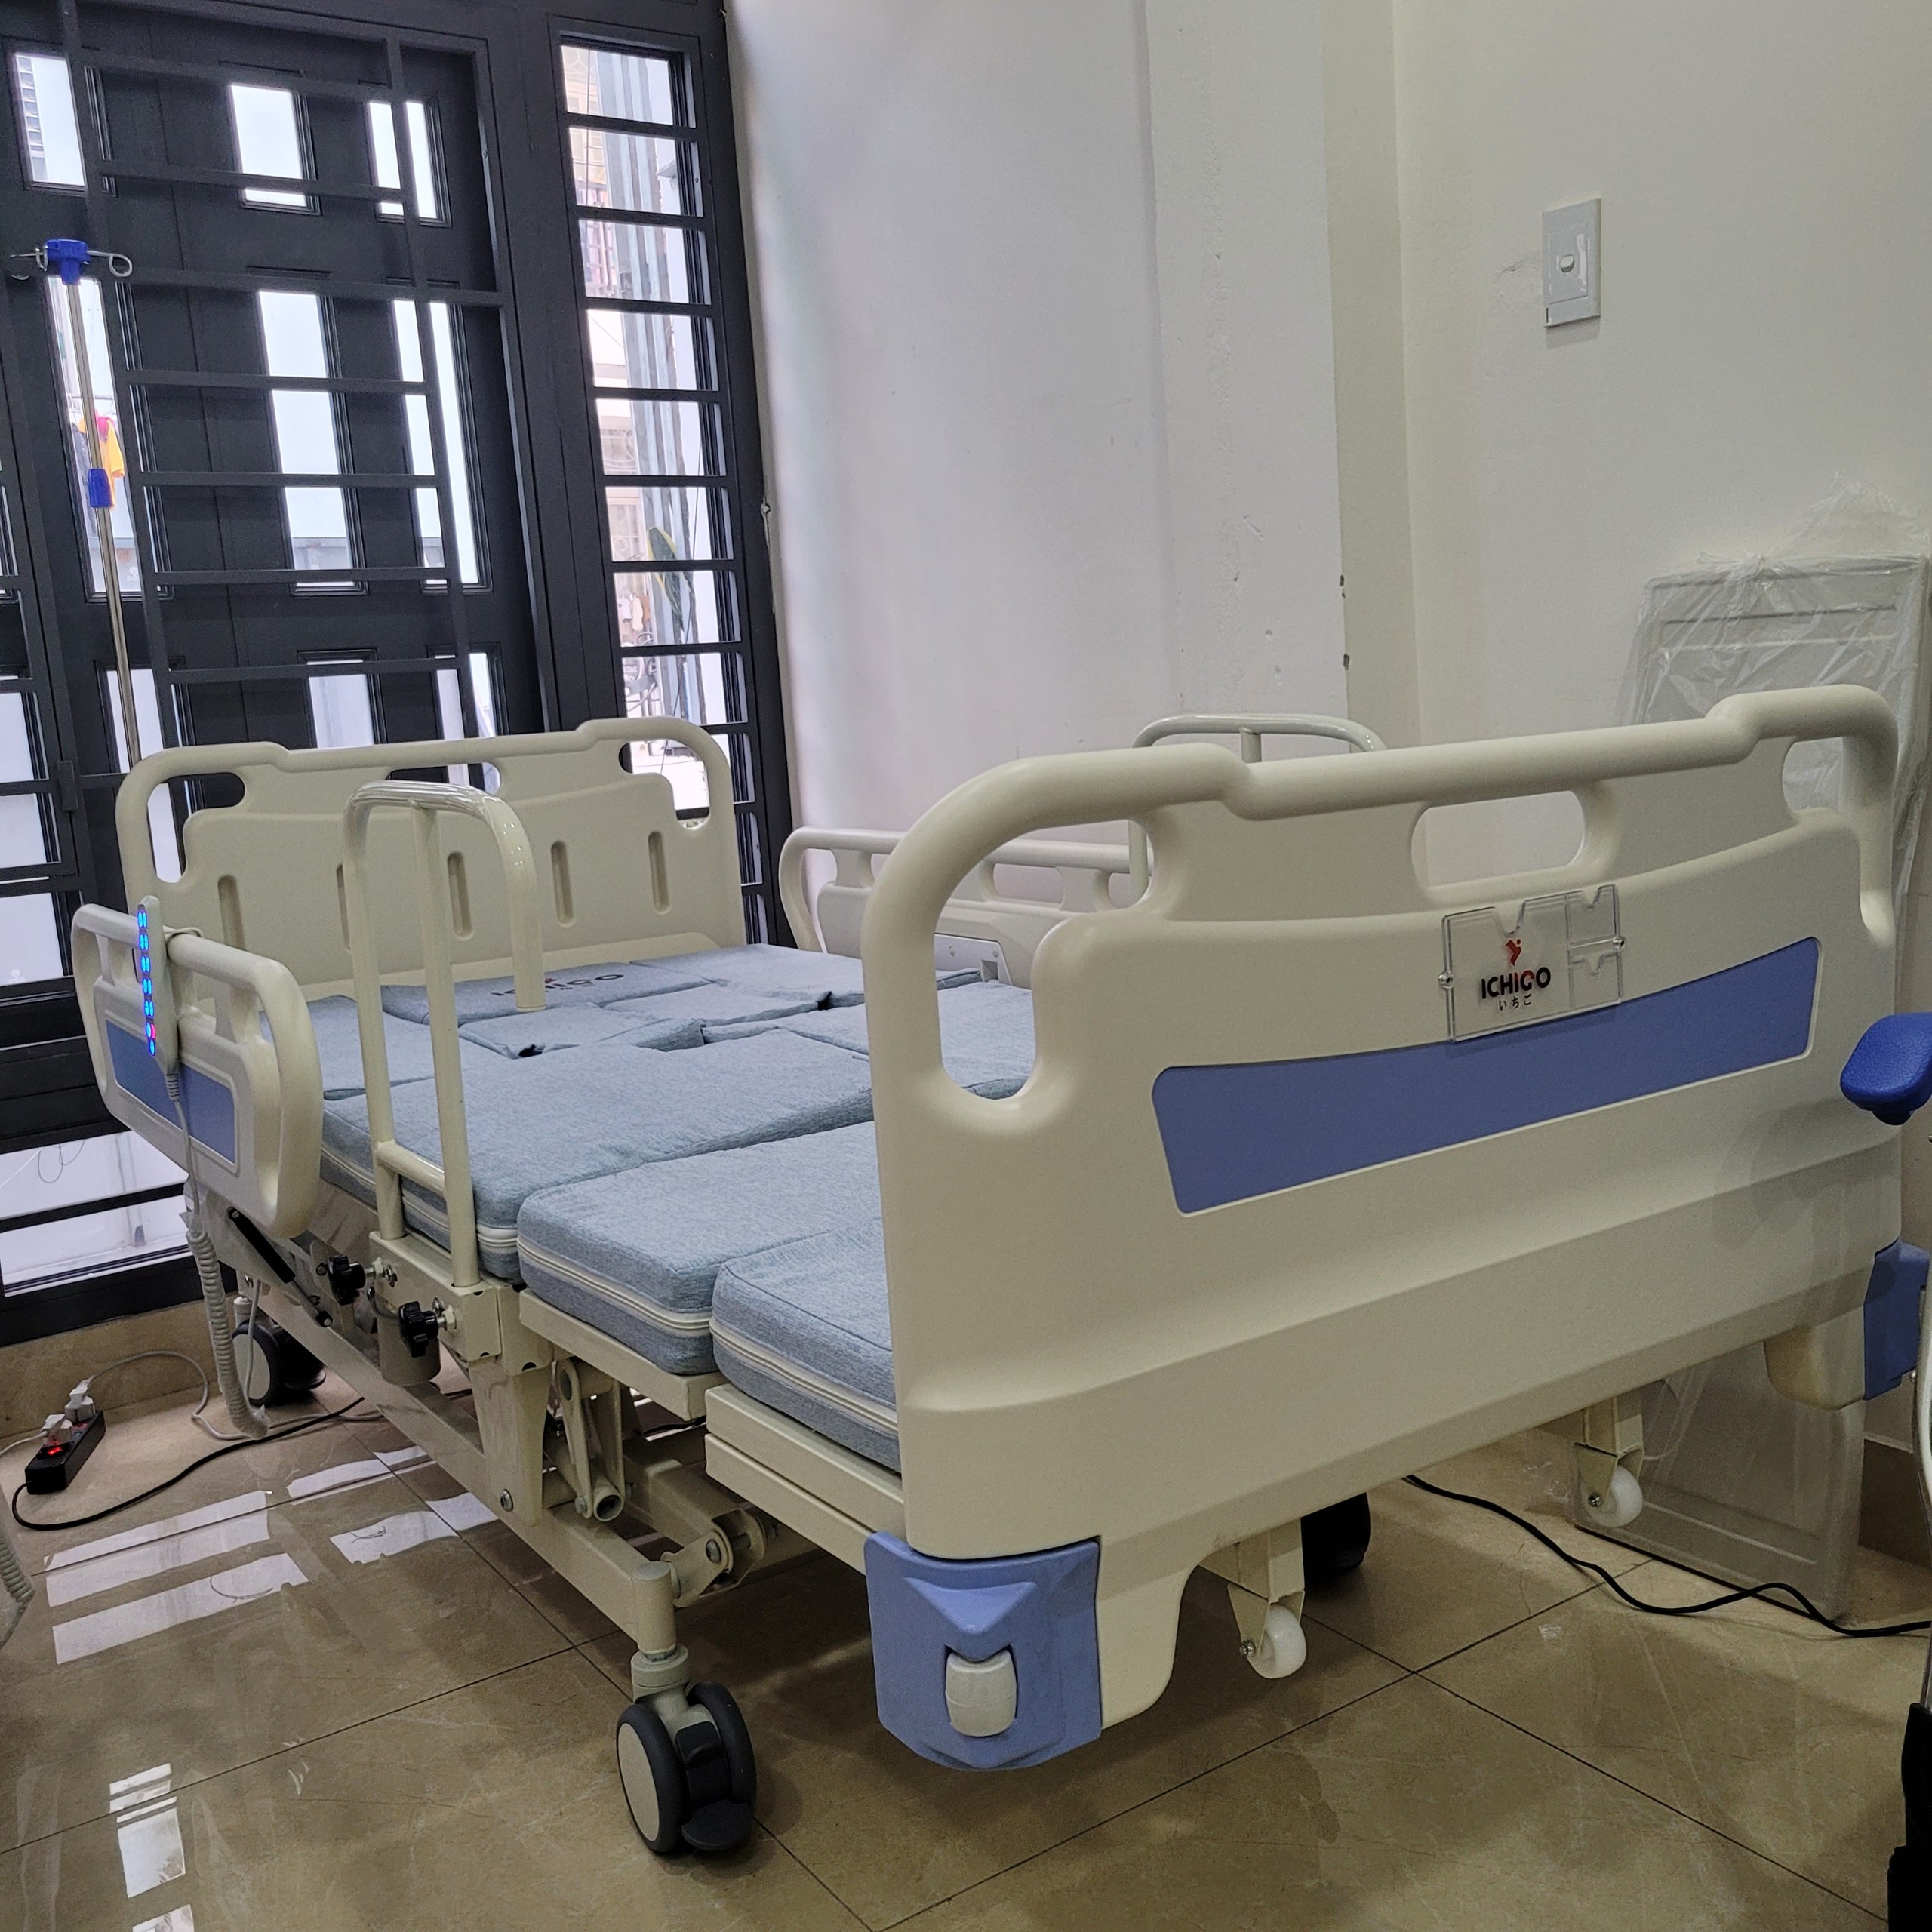 Giường bệnh nhân cao cấp ICHIGO HB-07E